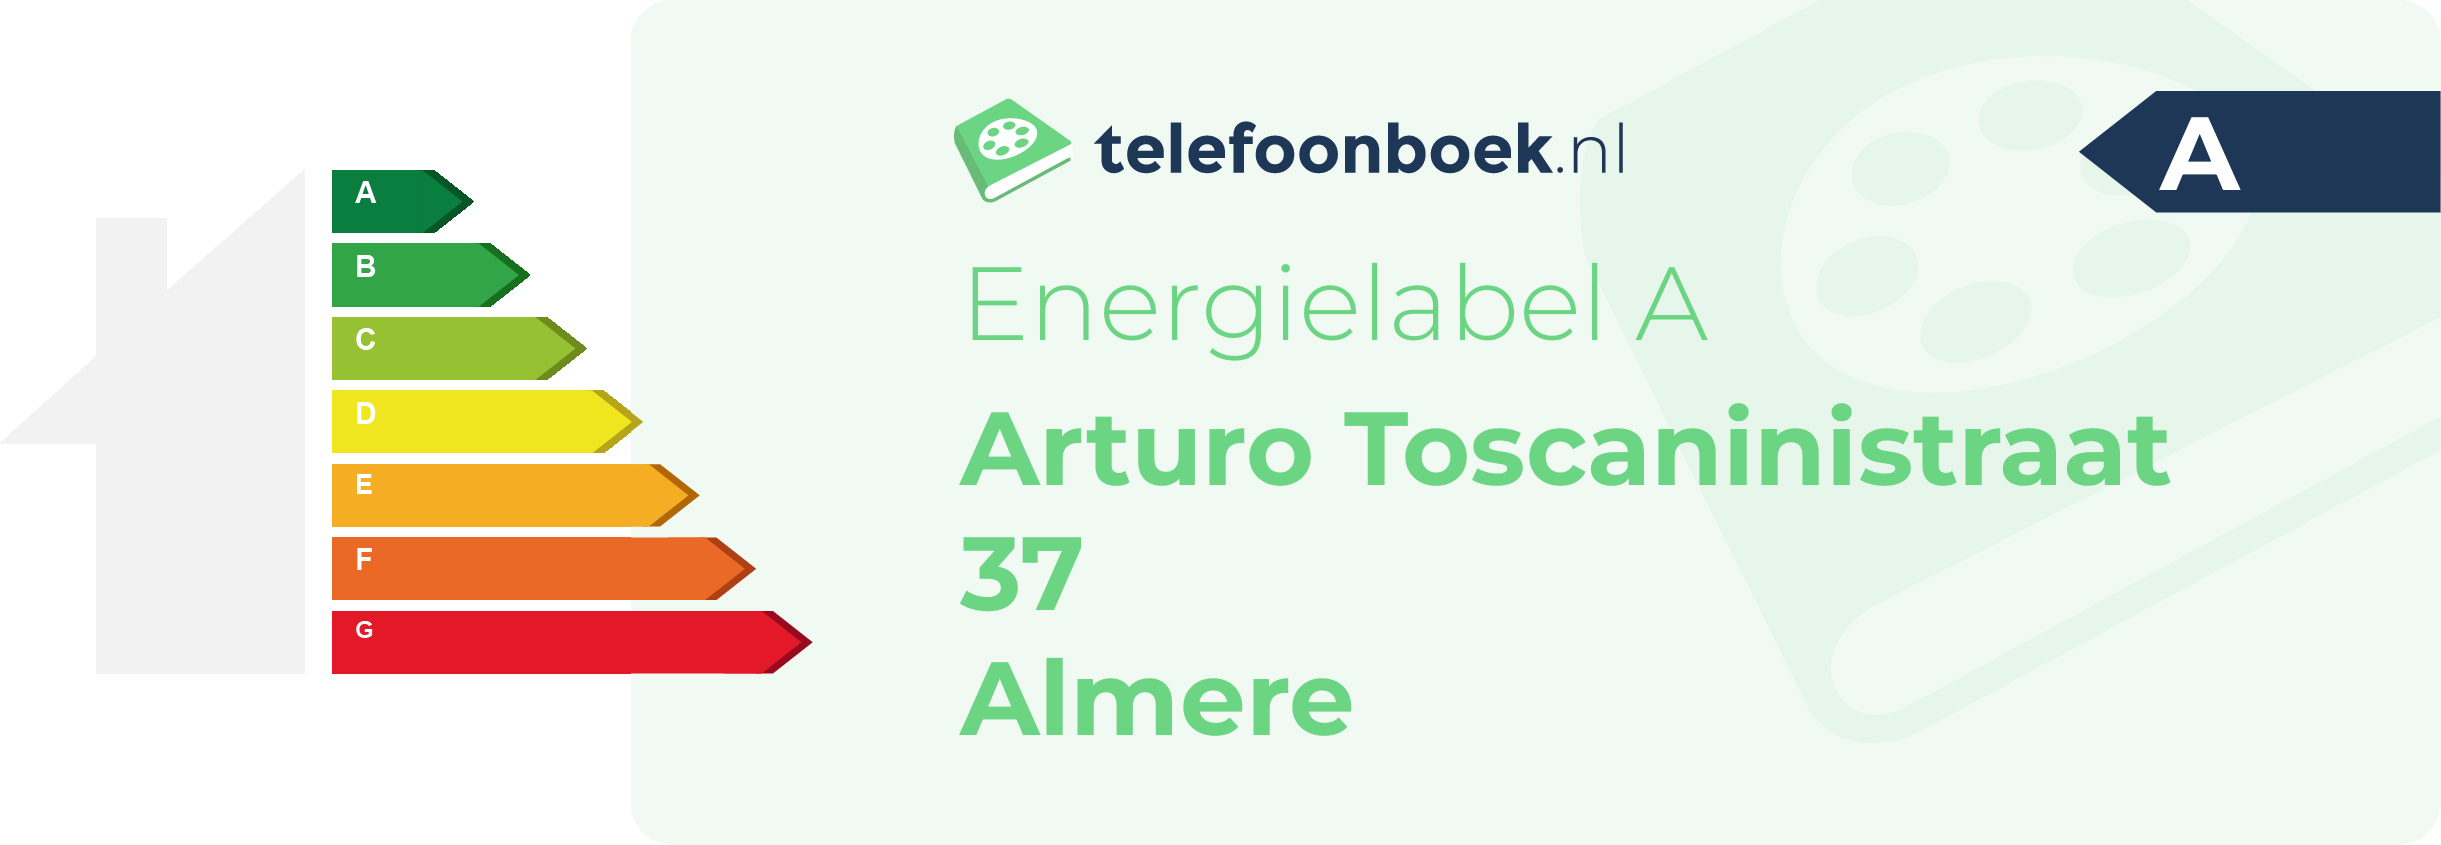 Energielabel Arturo Toscaninistraat 37 Almere